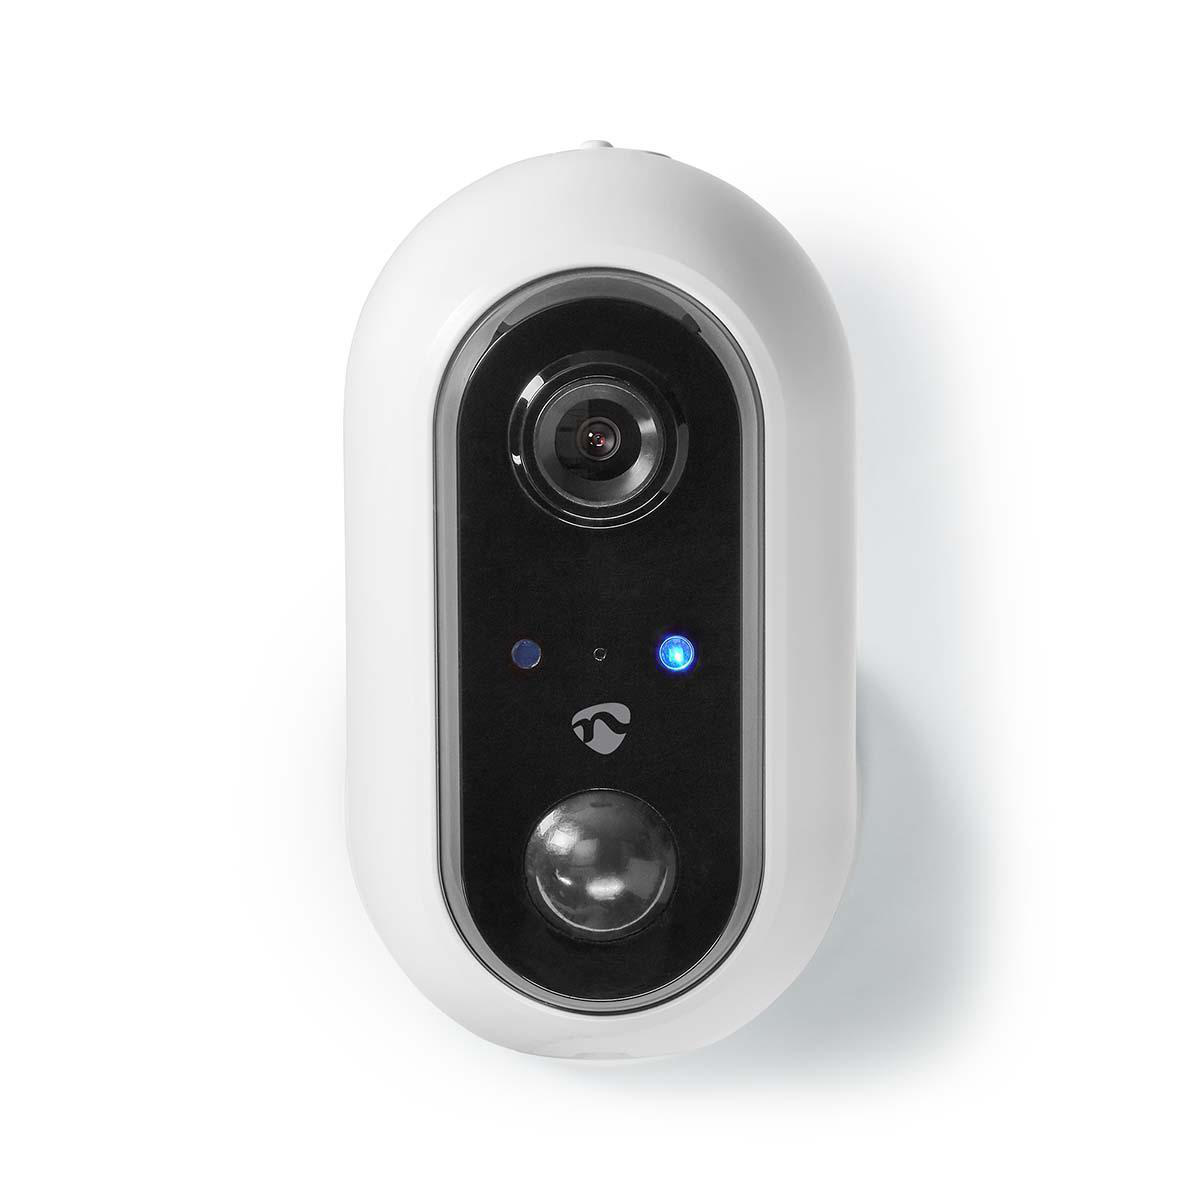 Caméra Wi-Fi extérieure SmartLife | Full HD 1080p | IP65 | Cloud / MicroSD | Détecteur de mouvement | Vision nocturne | Android ™ et iOS | blanc